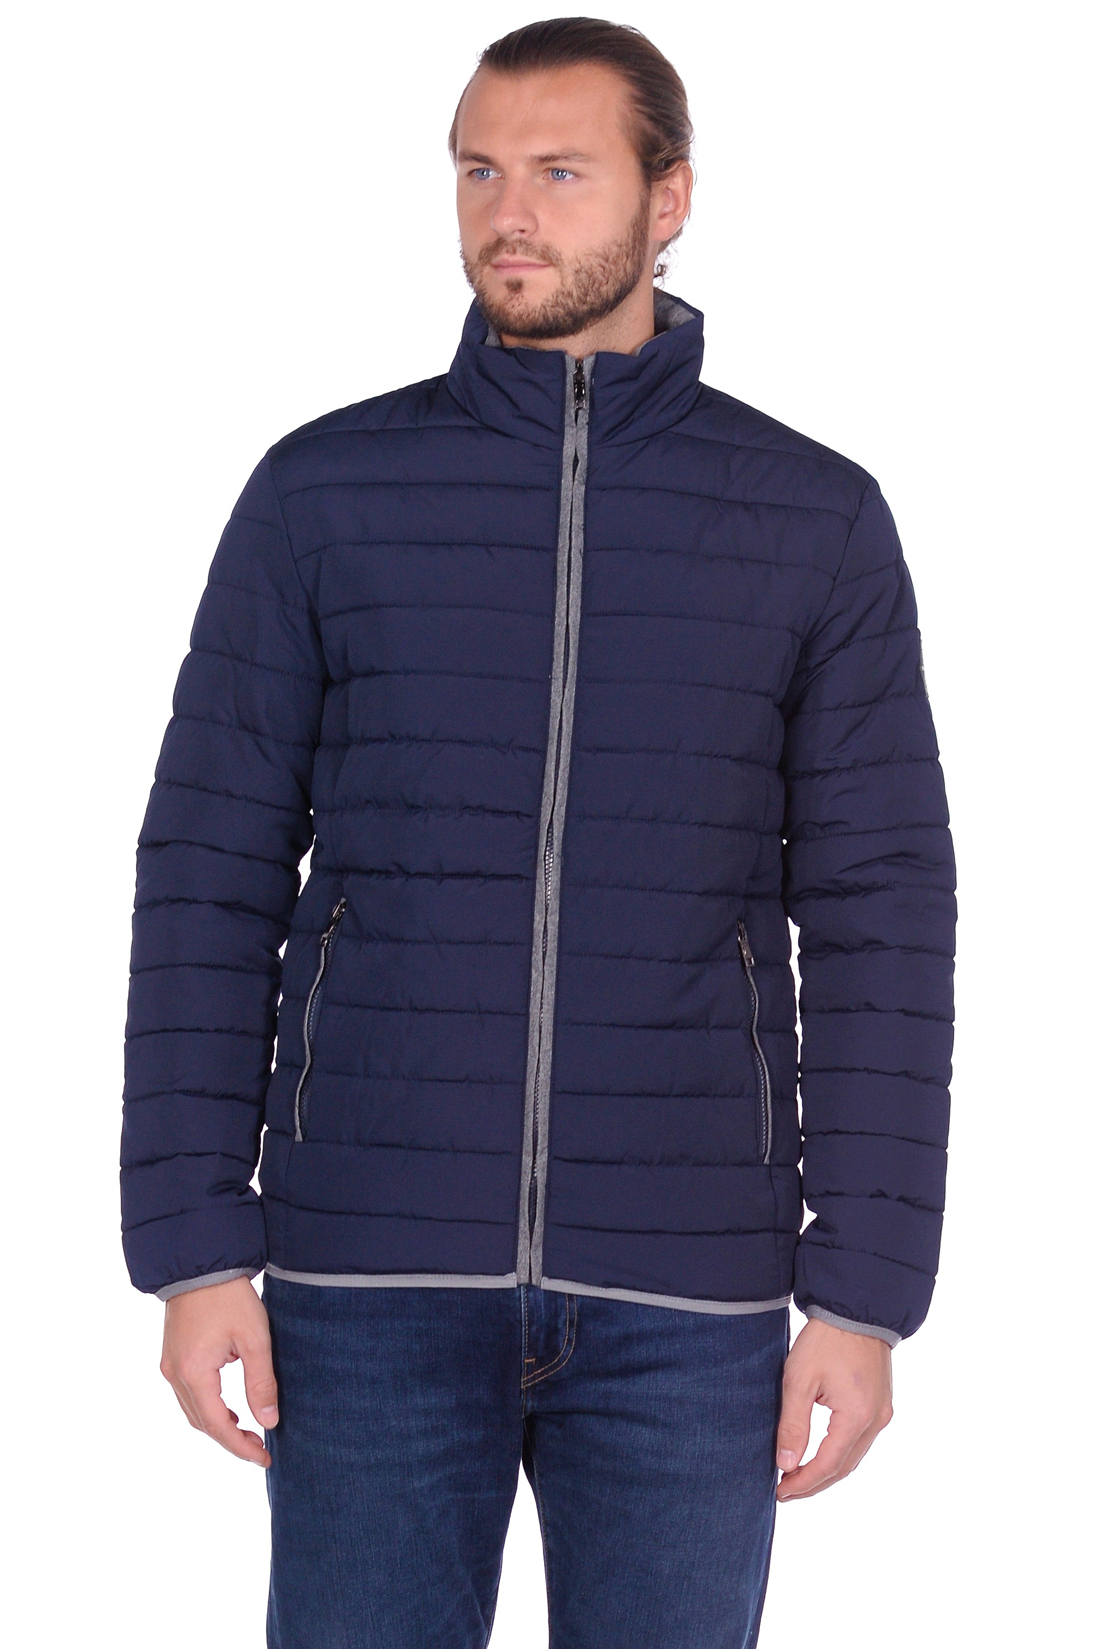 Лёгкая куртка с контрастной отделкой (арт. baon B539553), размер XXL, цвет синий Лёгкая куртка с контрастной отделкой (арт. baon B539553) - фото 1